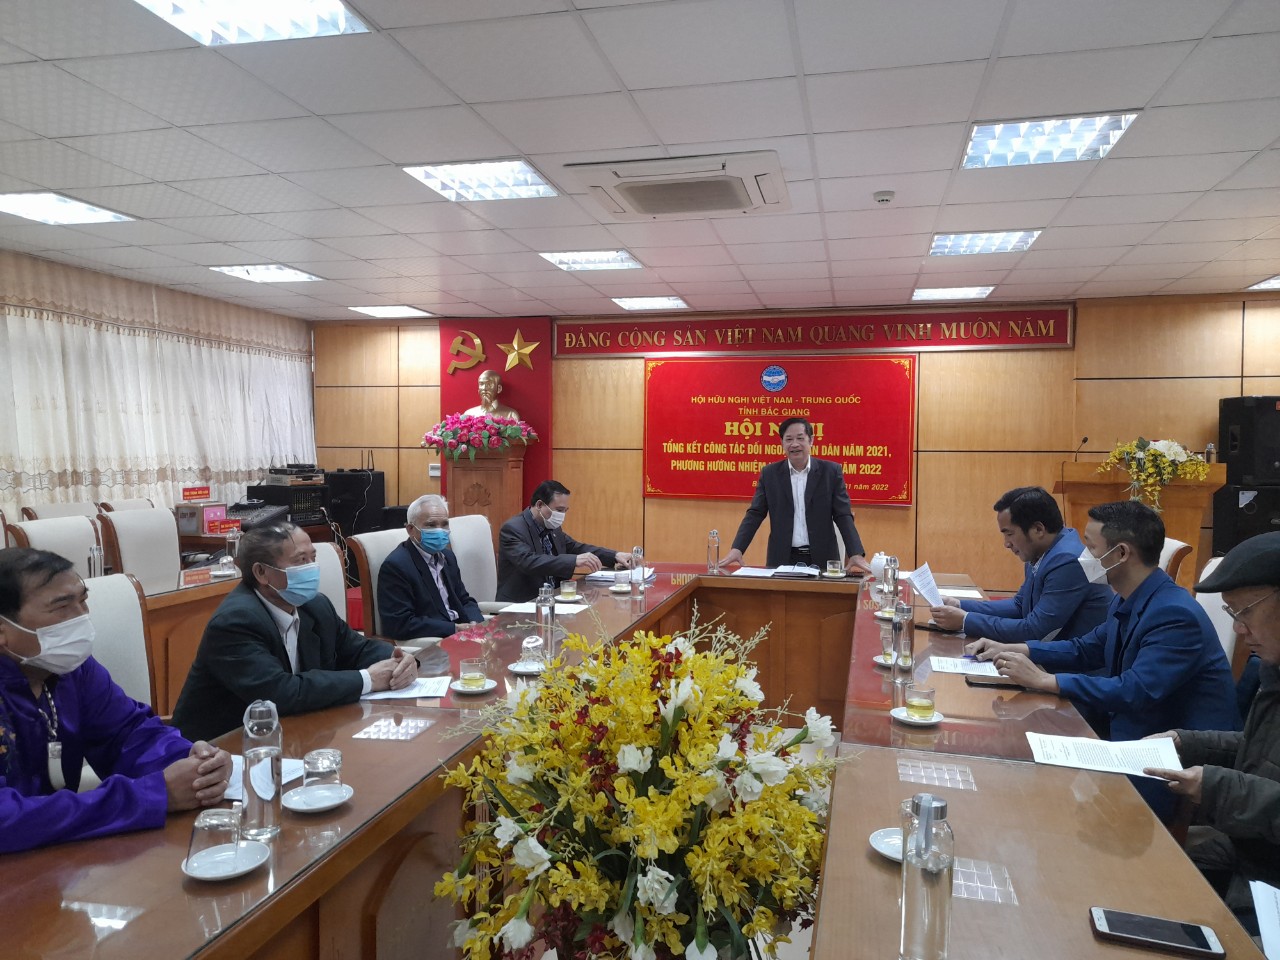 Hội Hữu nghị Việt Nam – Trung Quốc tỉnh từng bước đổi mới nội dung, đưa hoạt động hội hiệu quả hơn